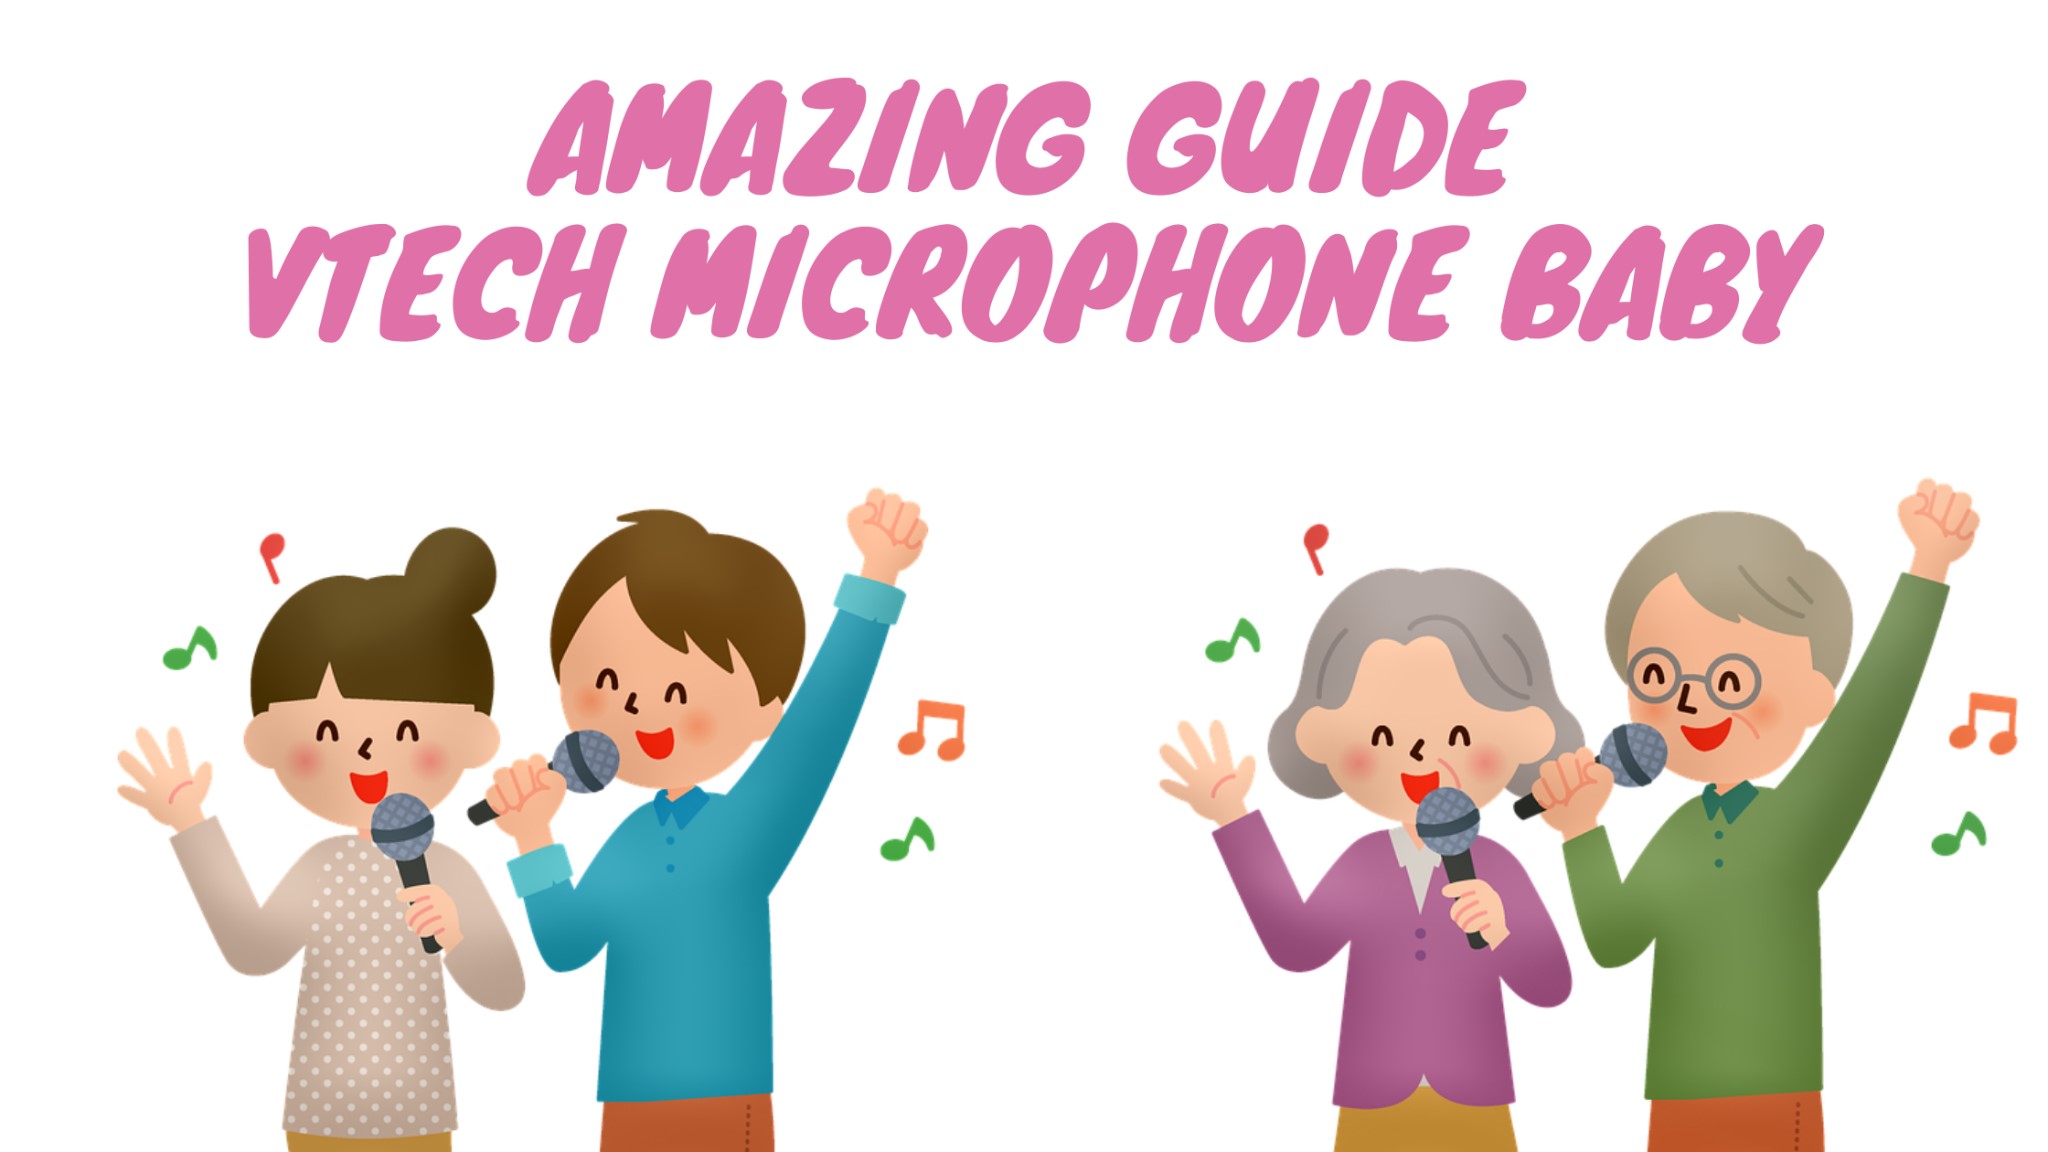 guide incroyable microphone vtech bébé